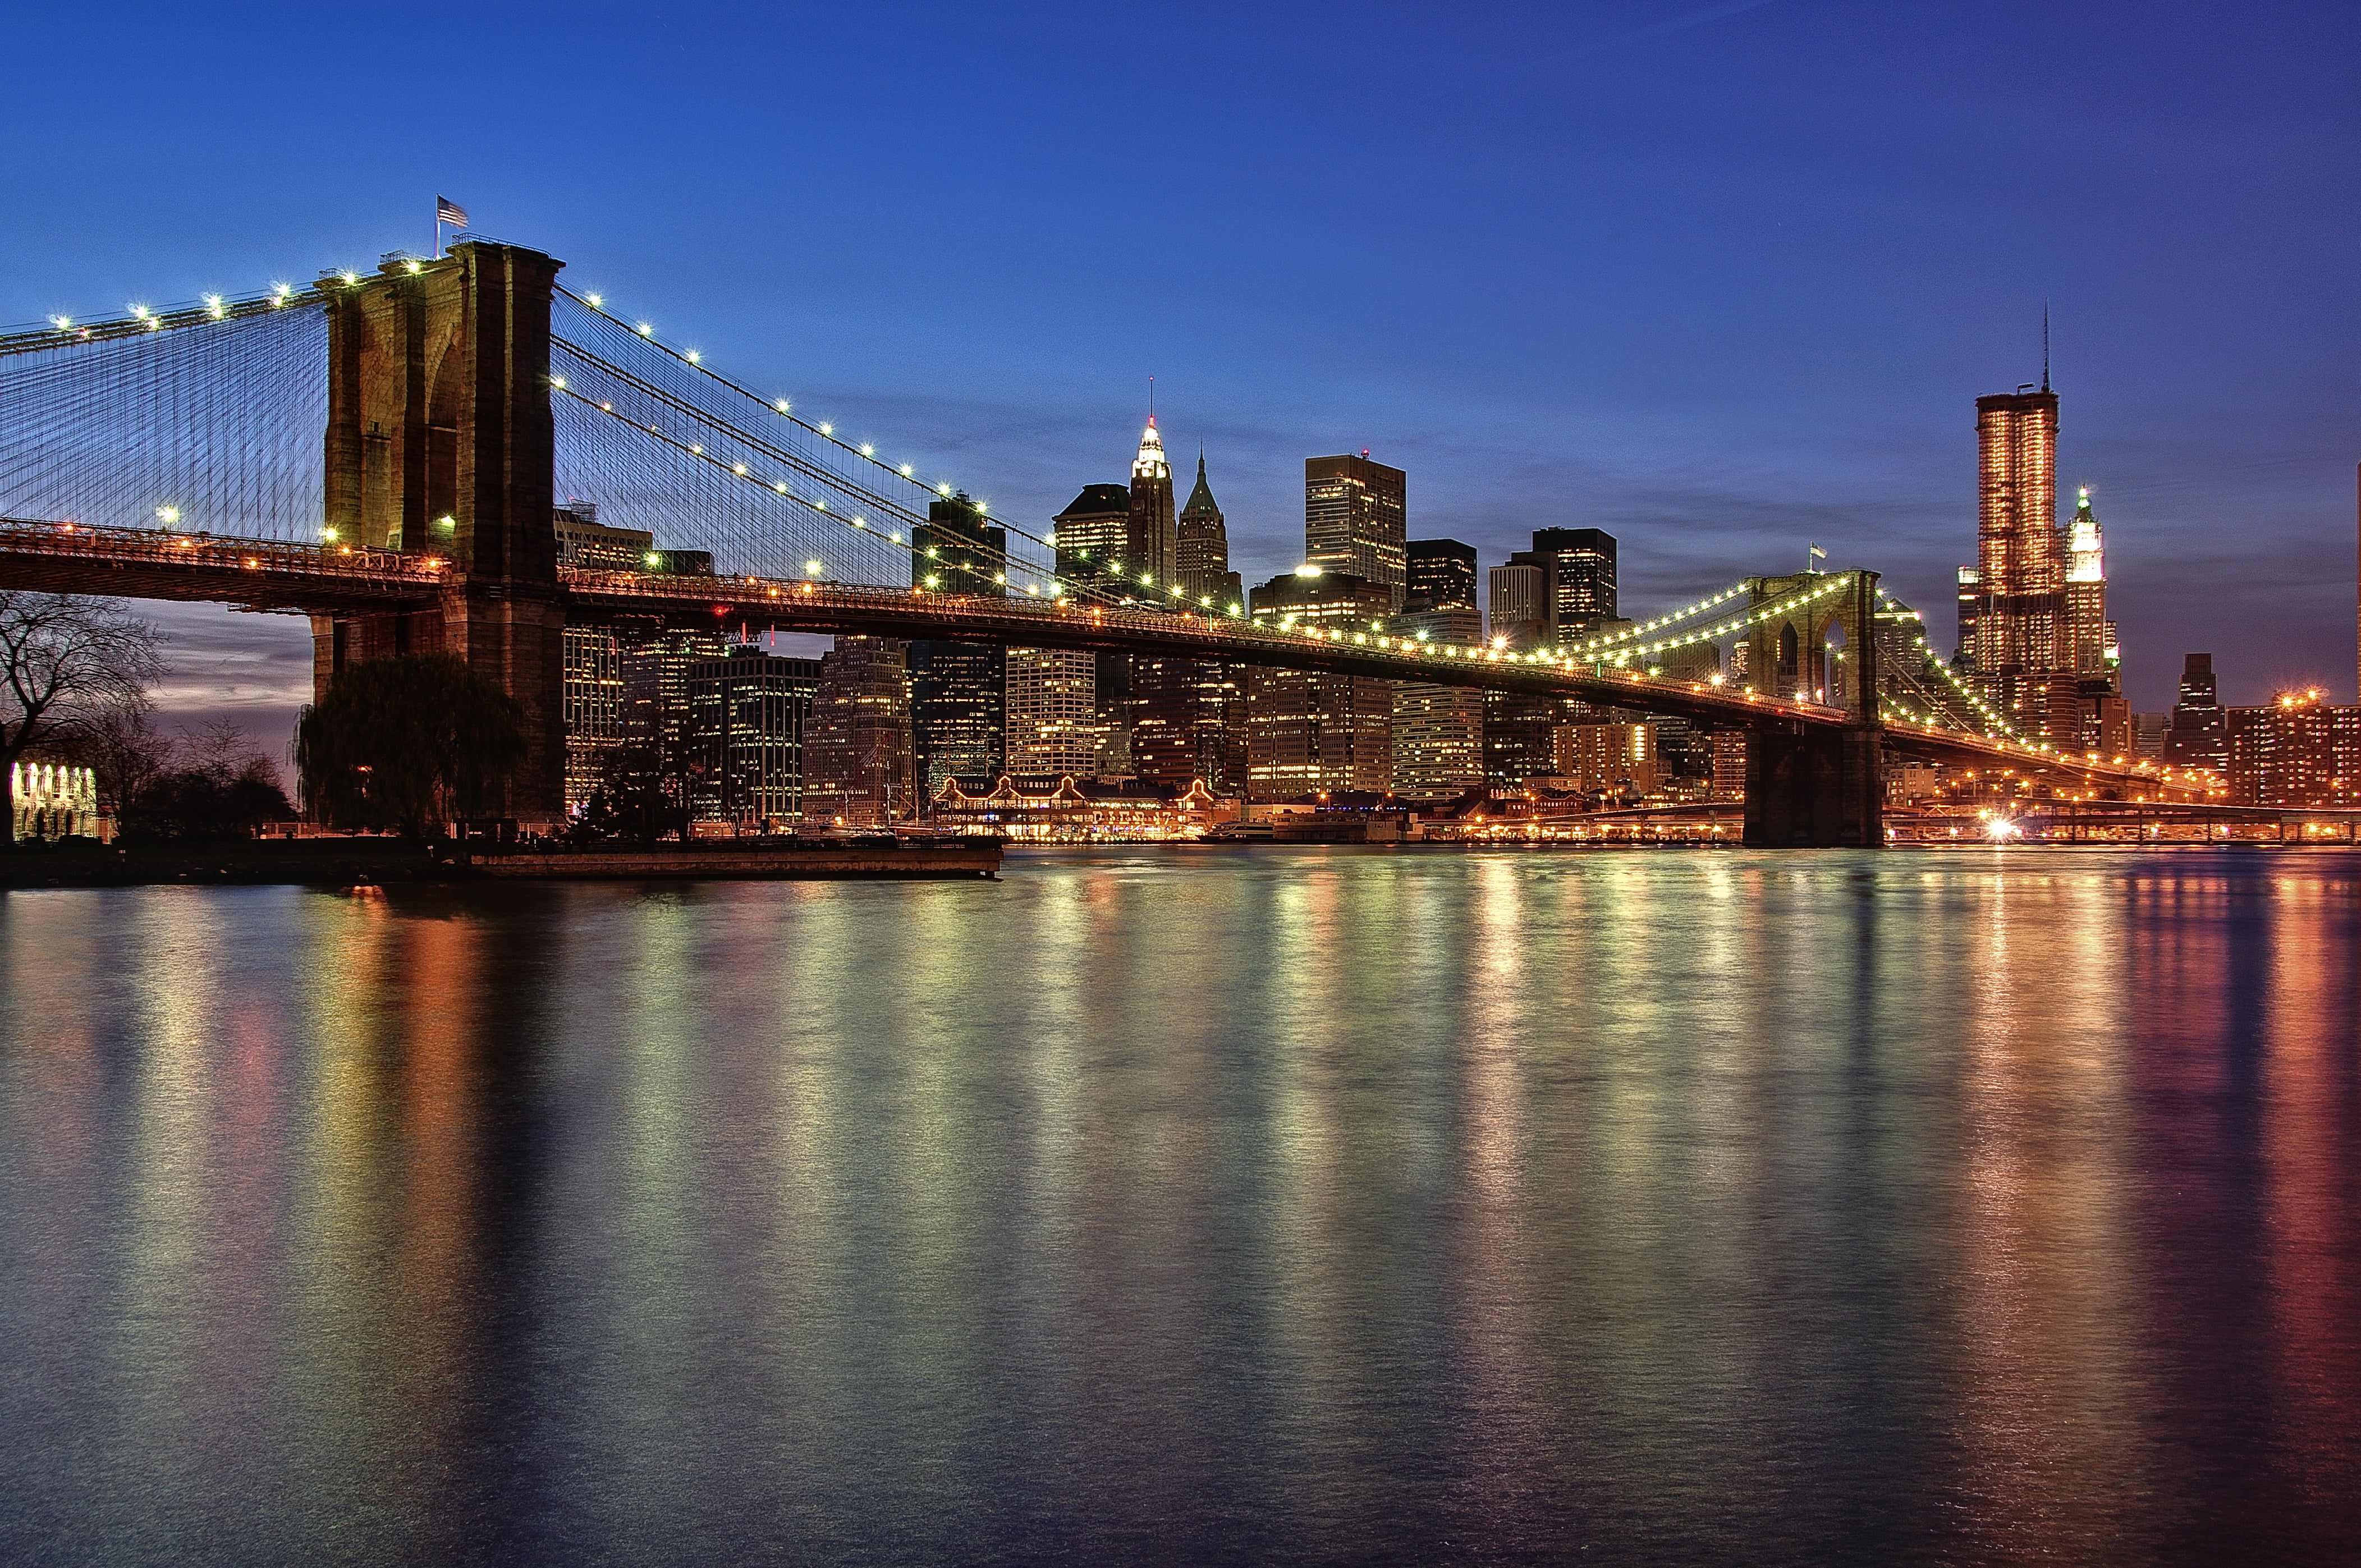 Архитектурное чудо в нью-йорке — бруклинский мост. история открытия и интересные факты